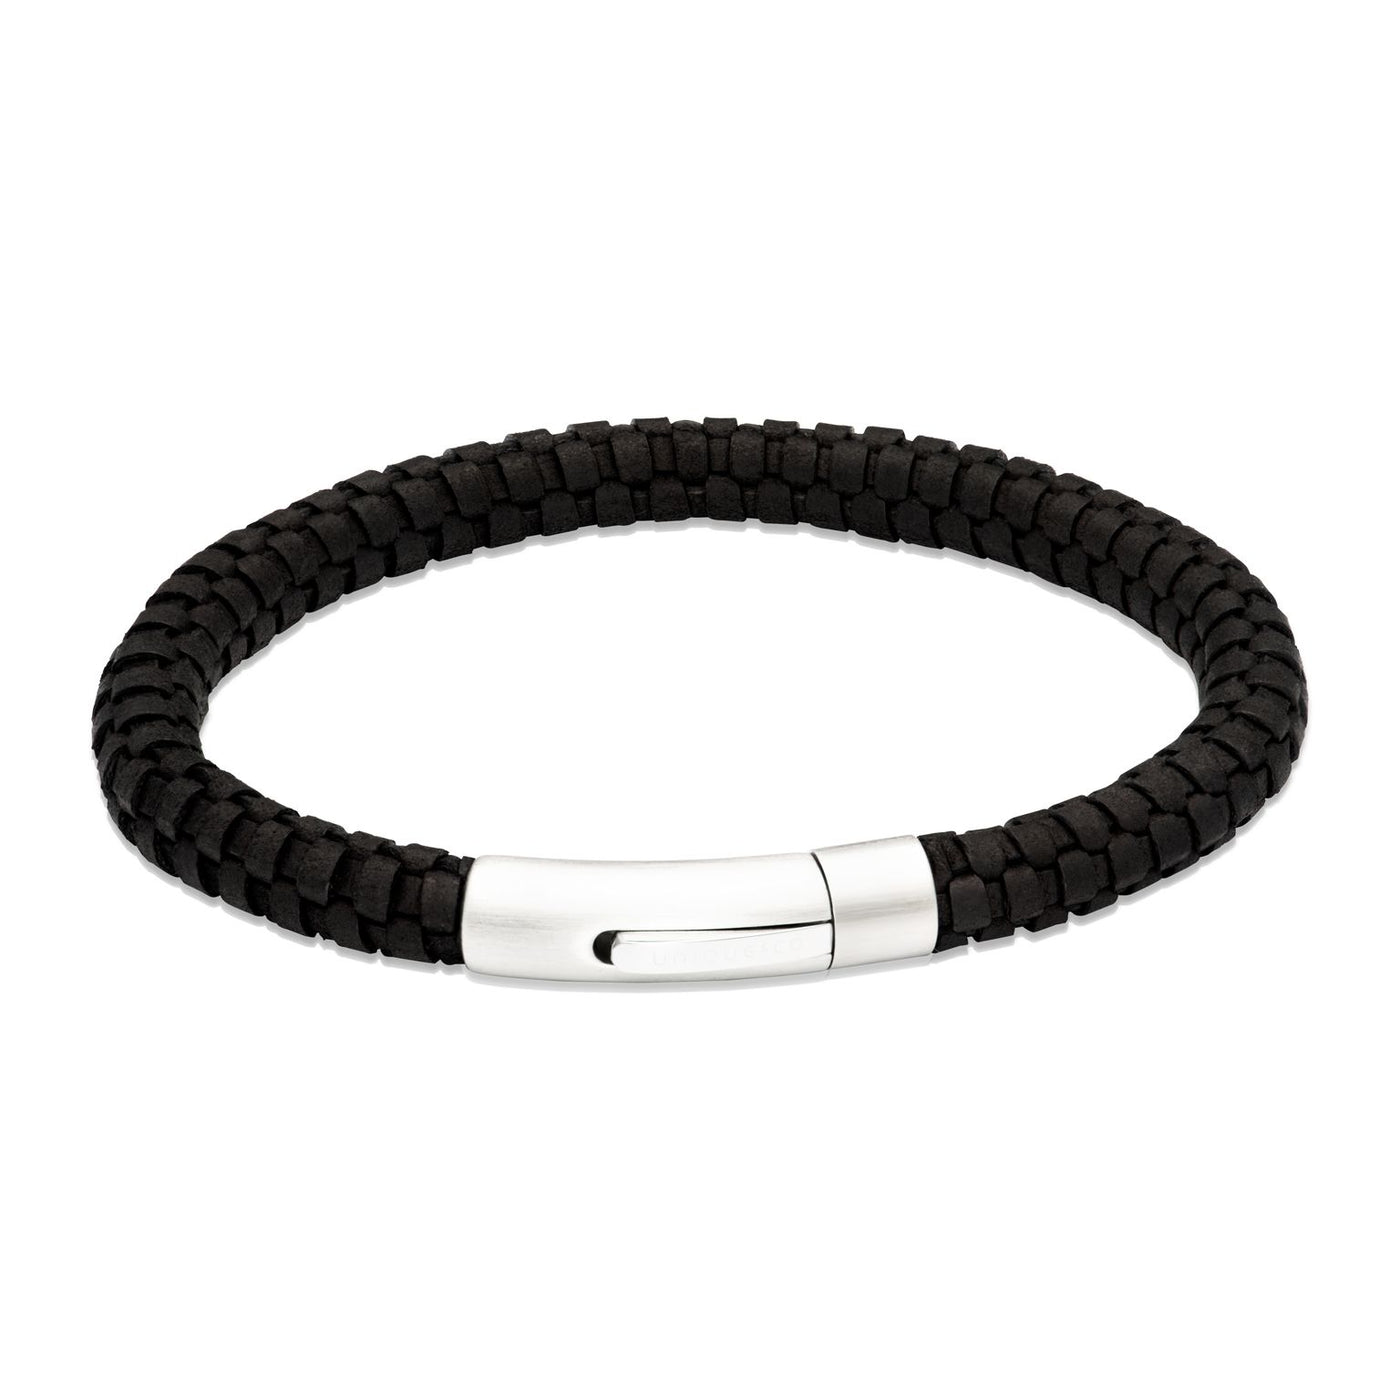 Unique and Co Black Leather Bracelet